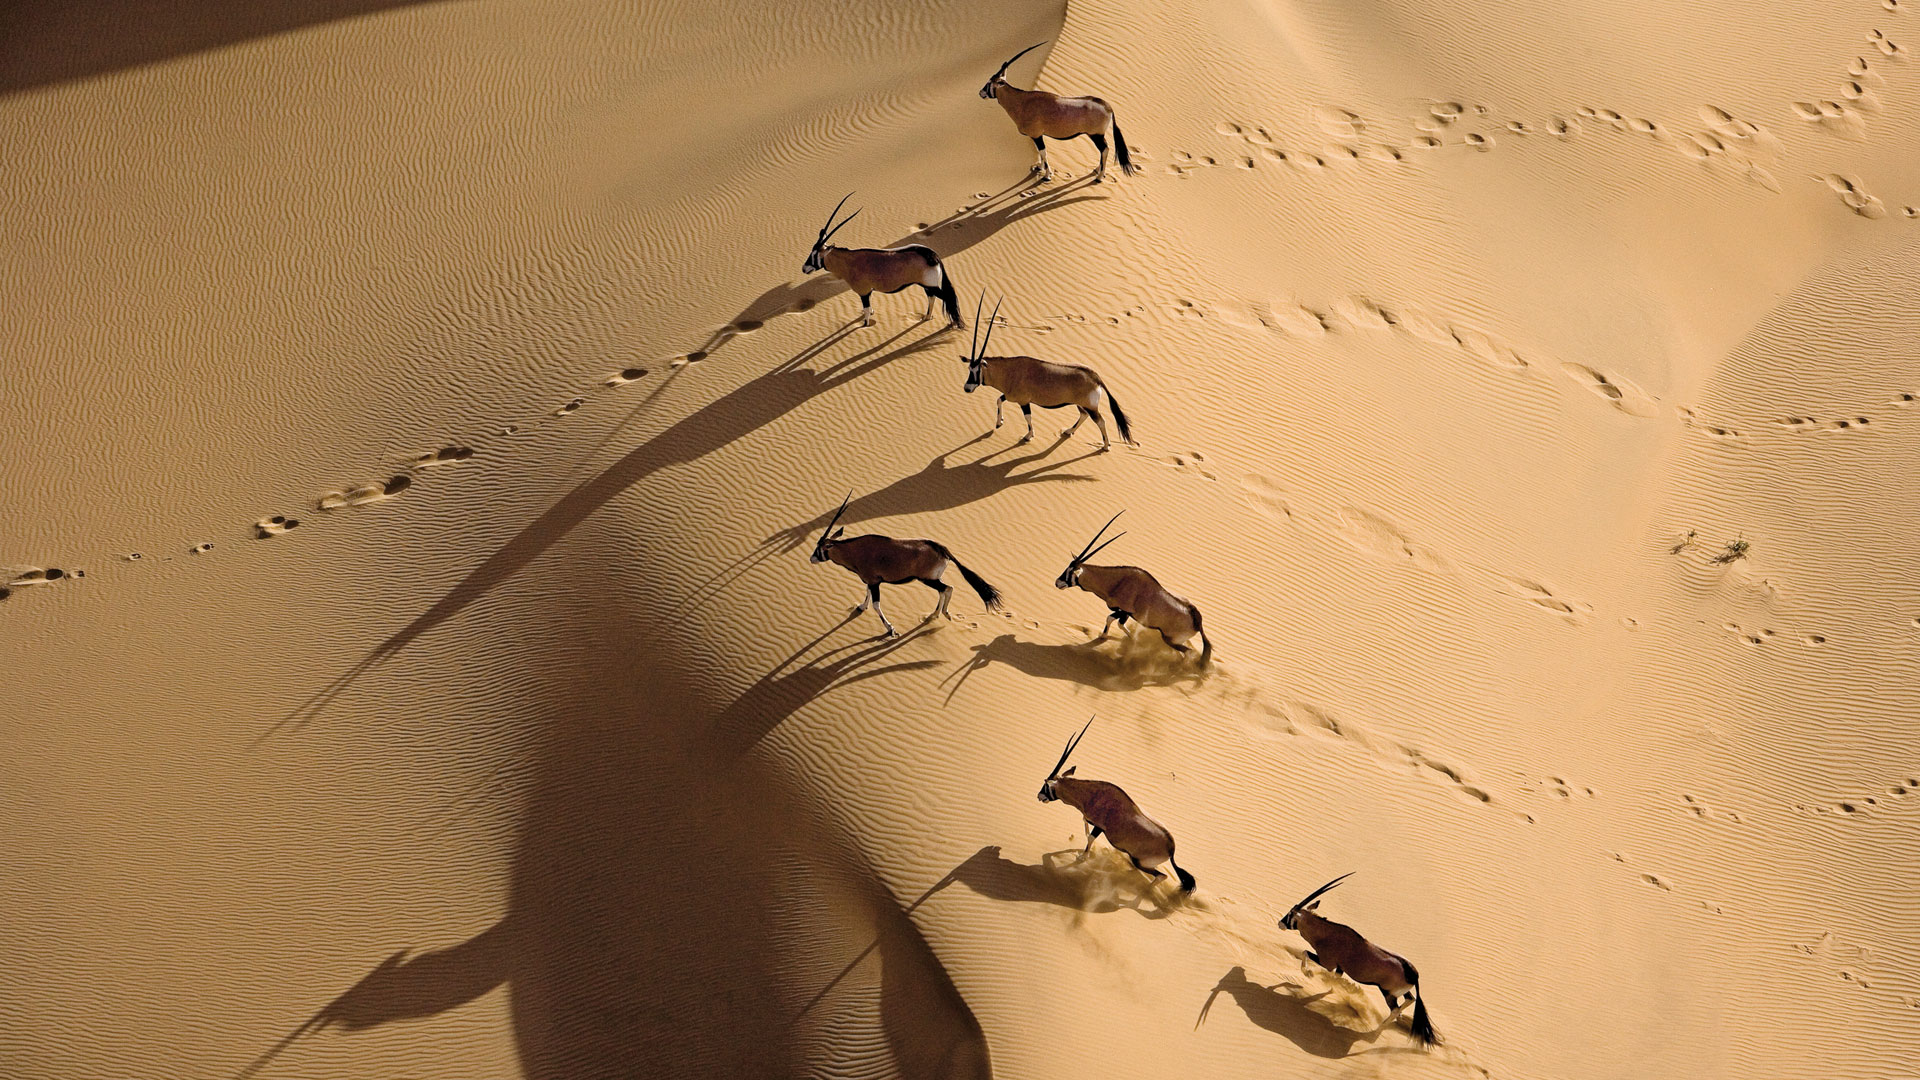  a herd of oryx Antelopes walking through Namibi Dessert Namibia Africa